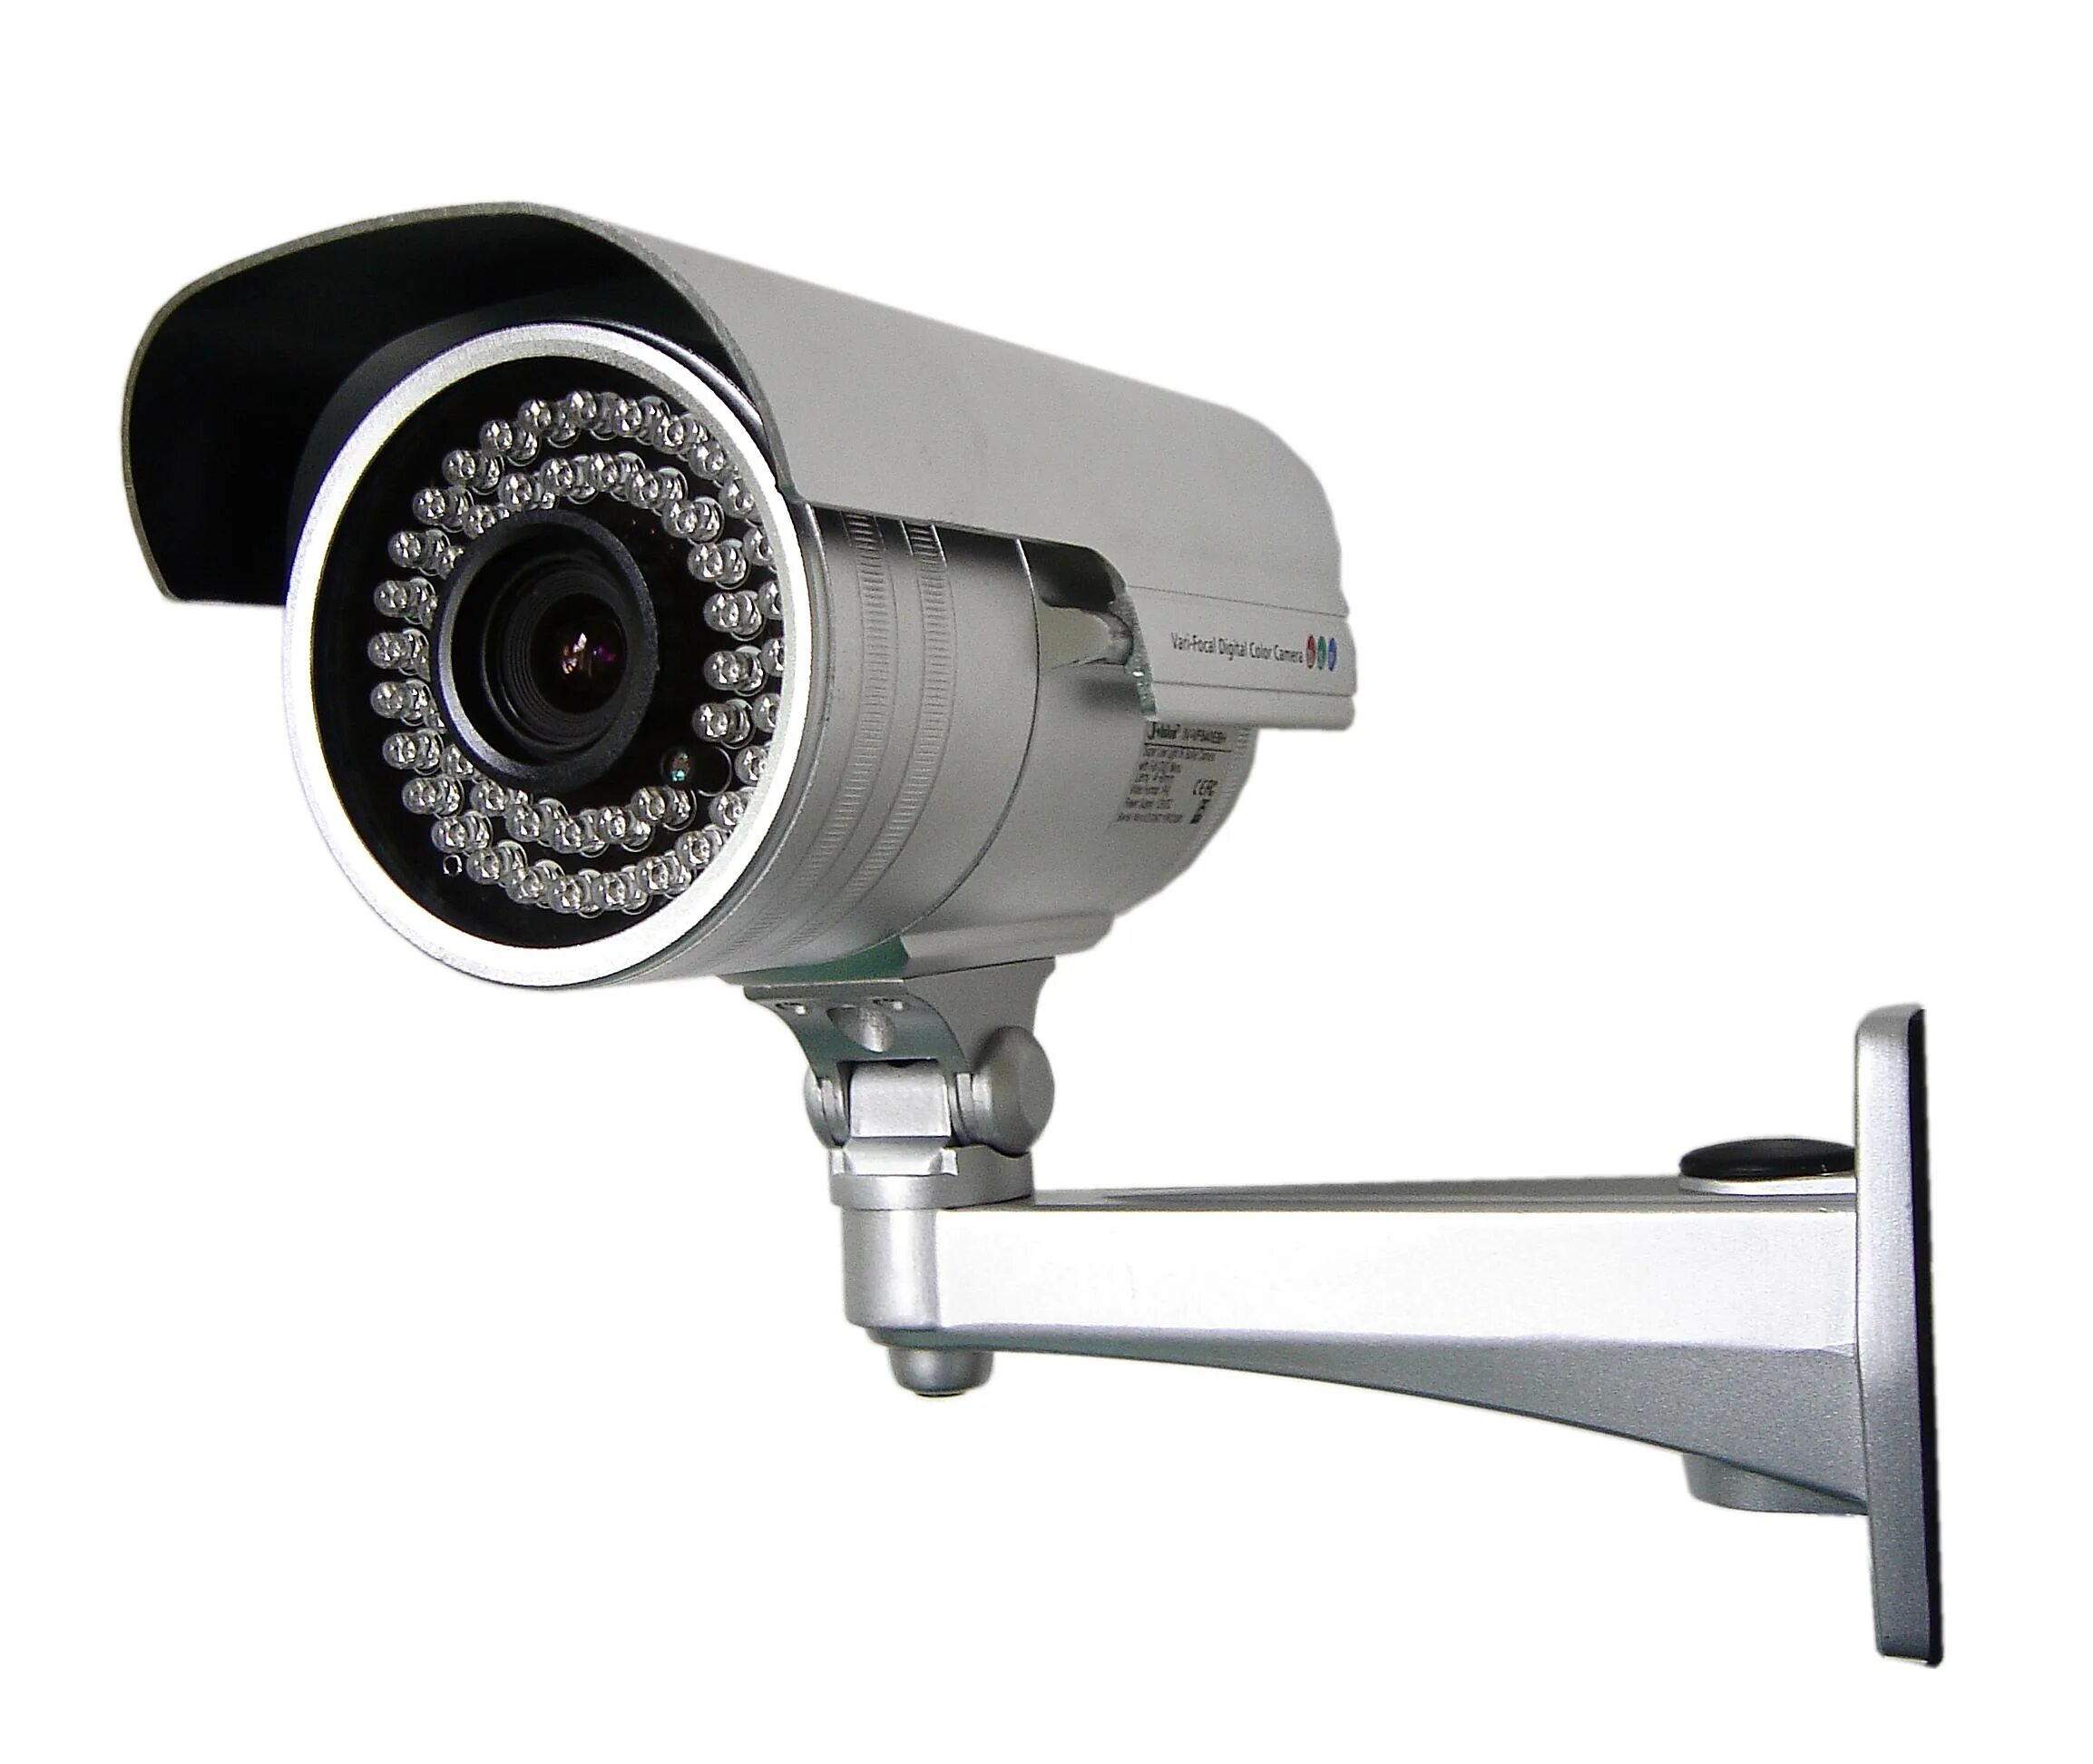 Камера тн. Камера CCTV Surveillance. Камера видеонаблюдения r1004p. "Security Camera"+nswg8. Камера наблюдения l75k18.